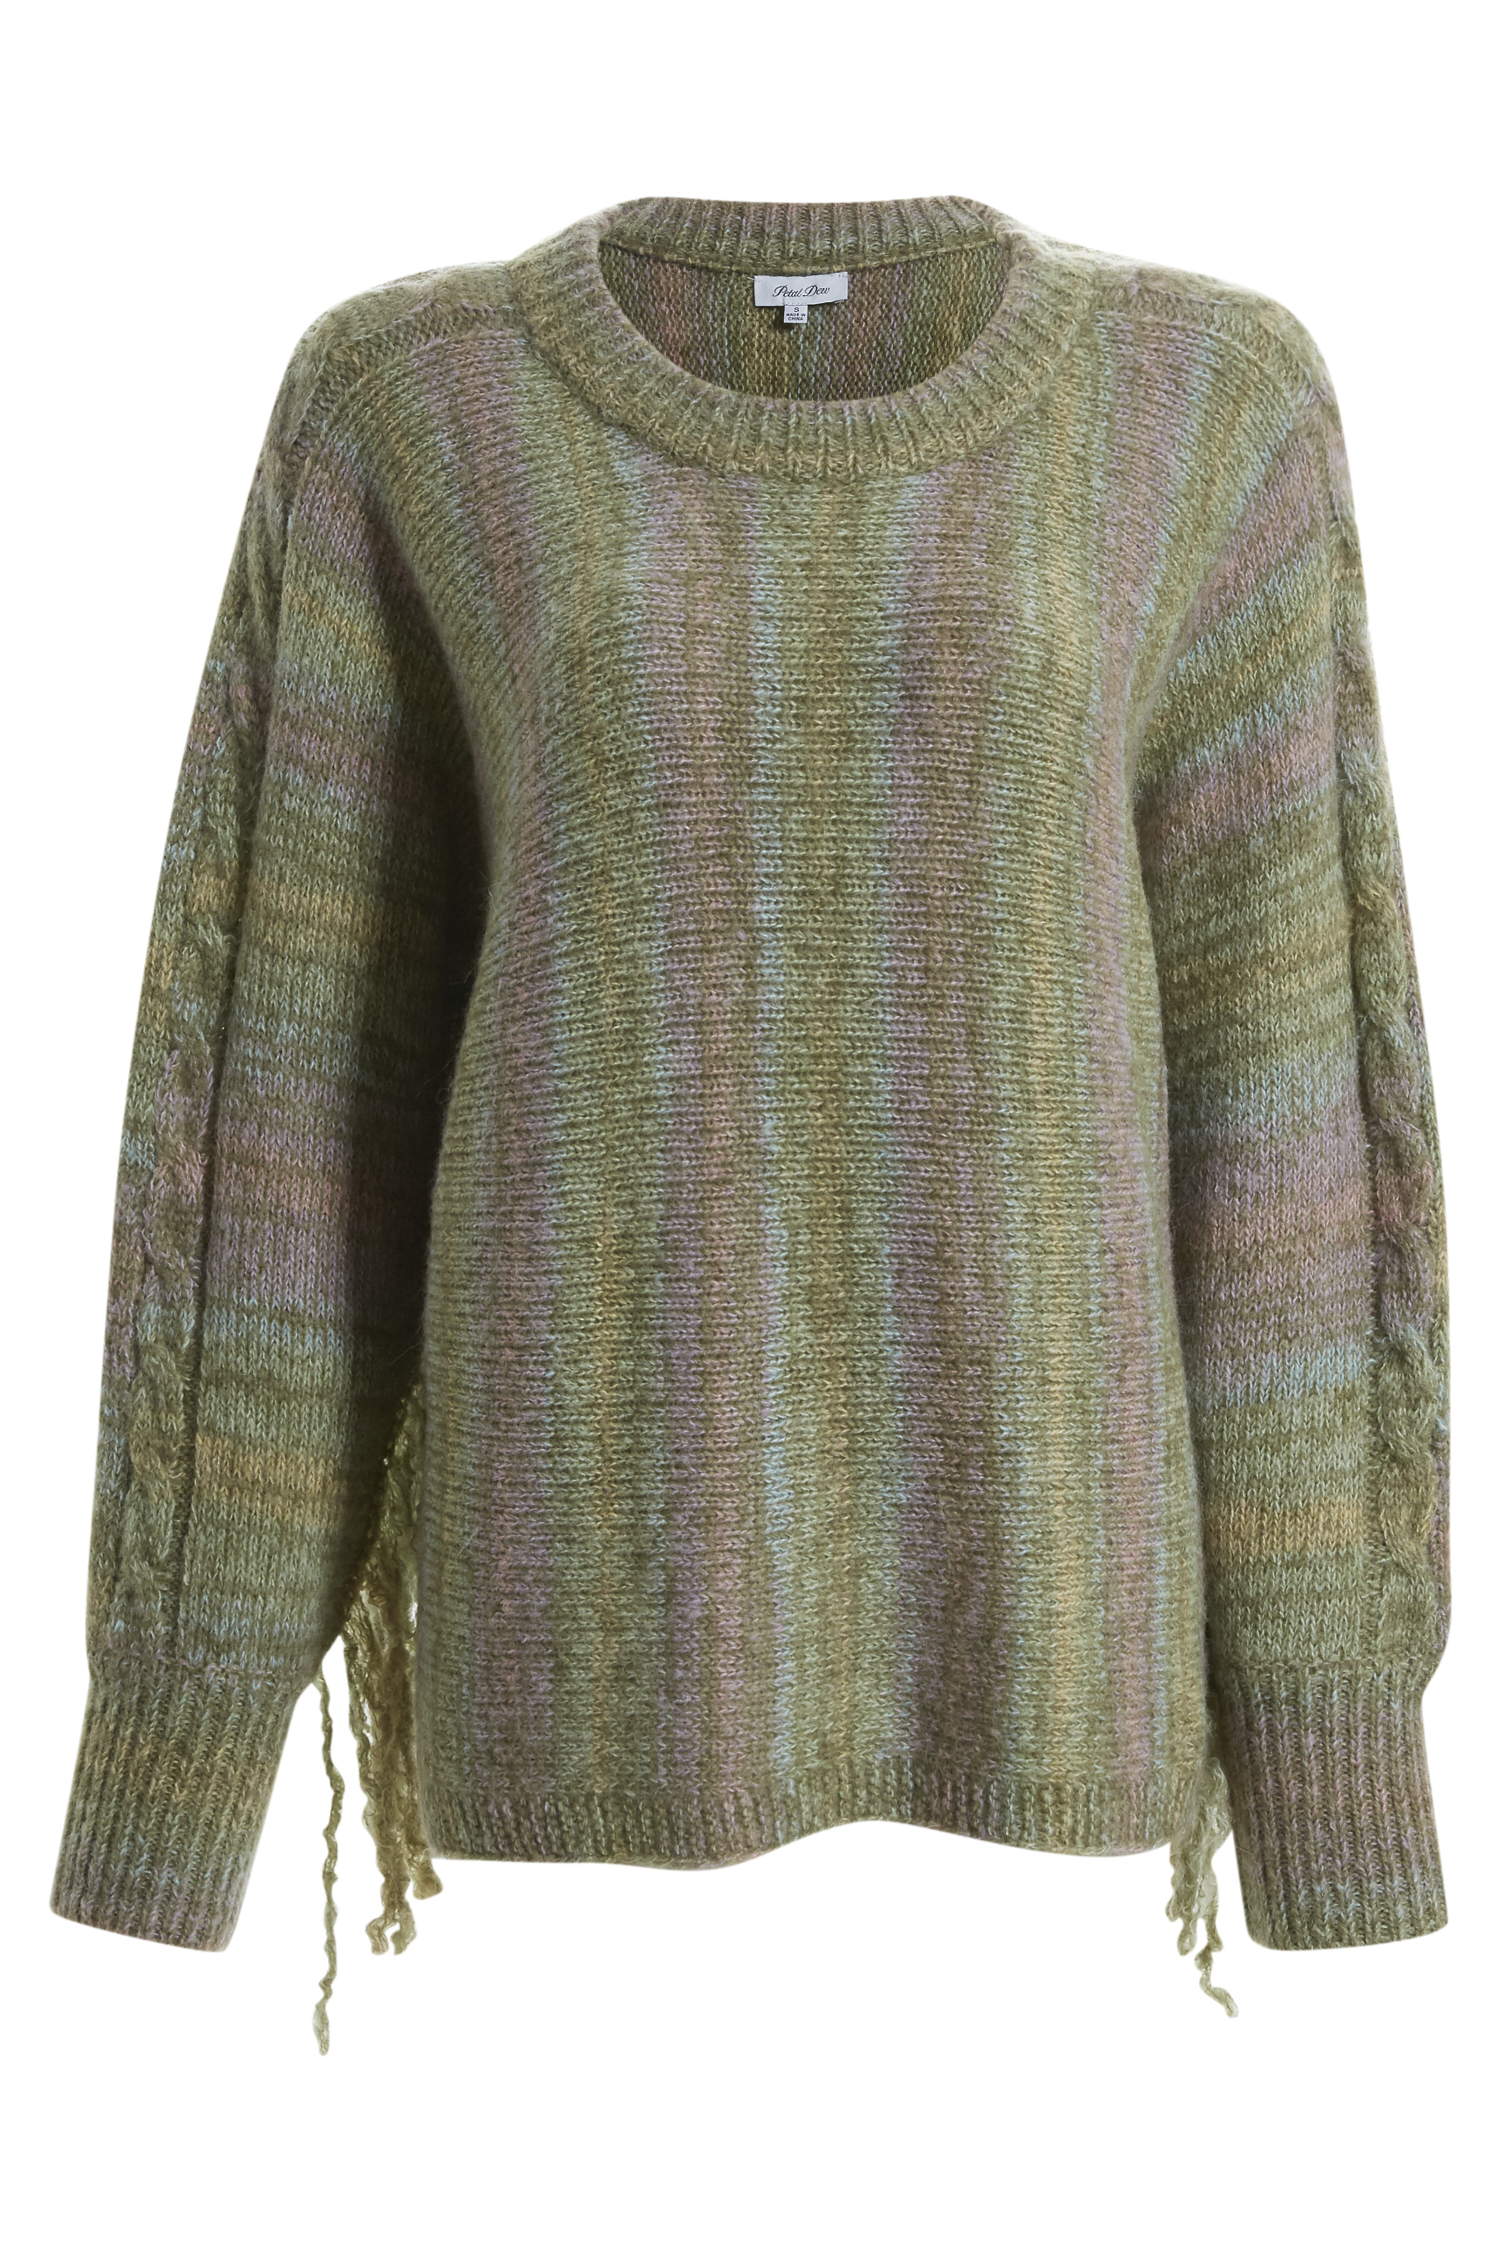 Multicolor Stripe Fringe Sweater Top